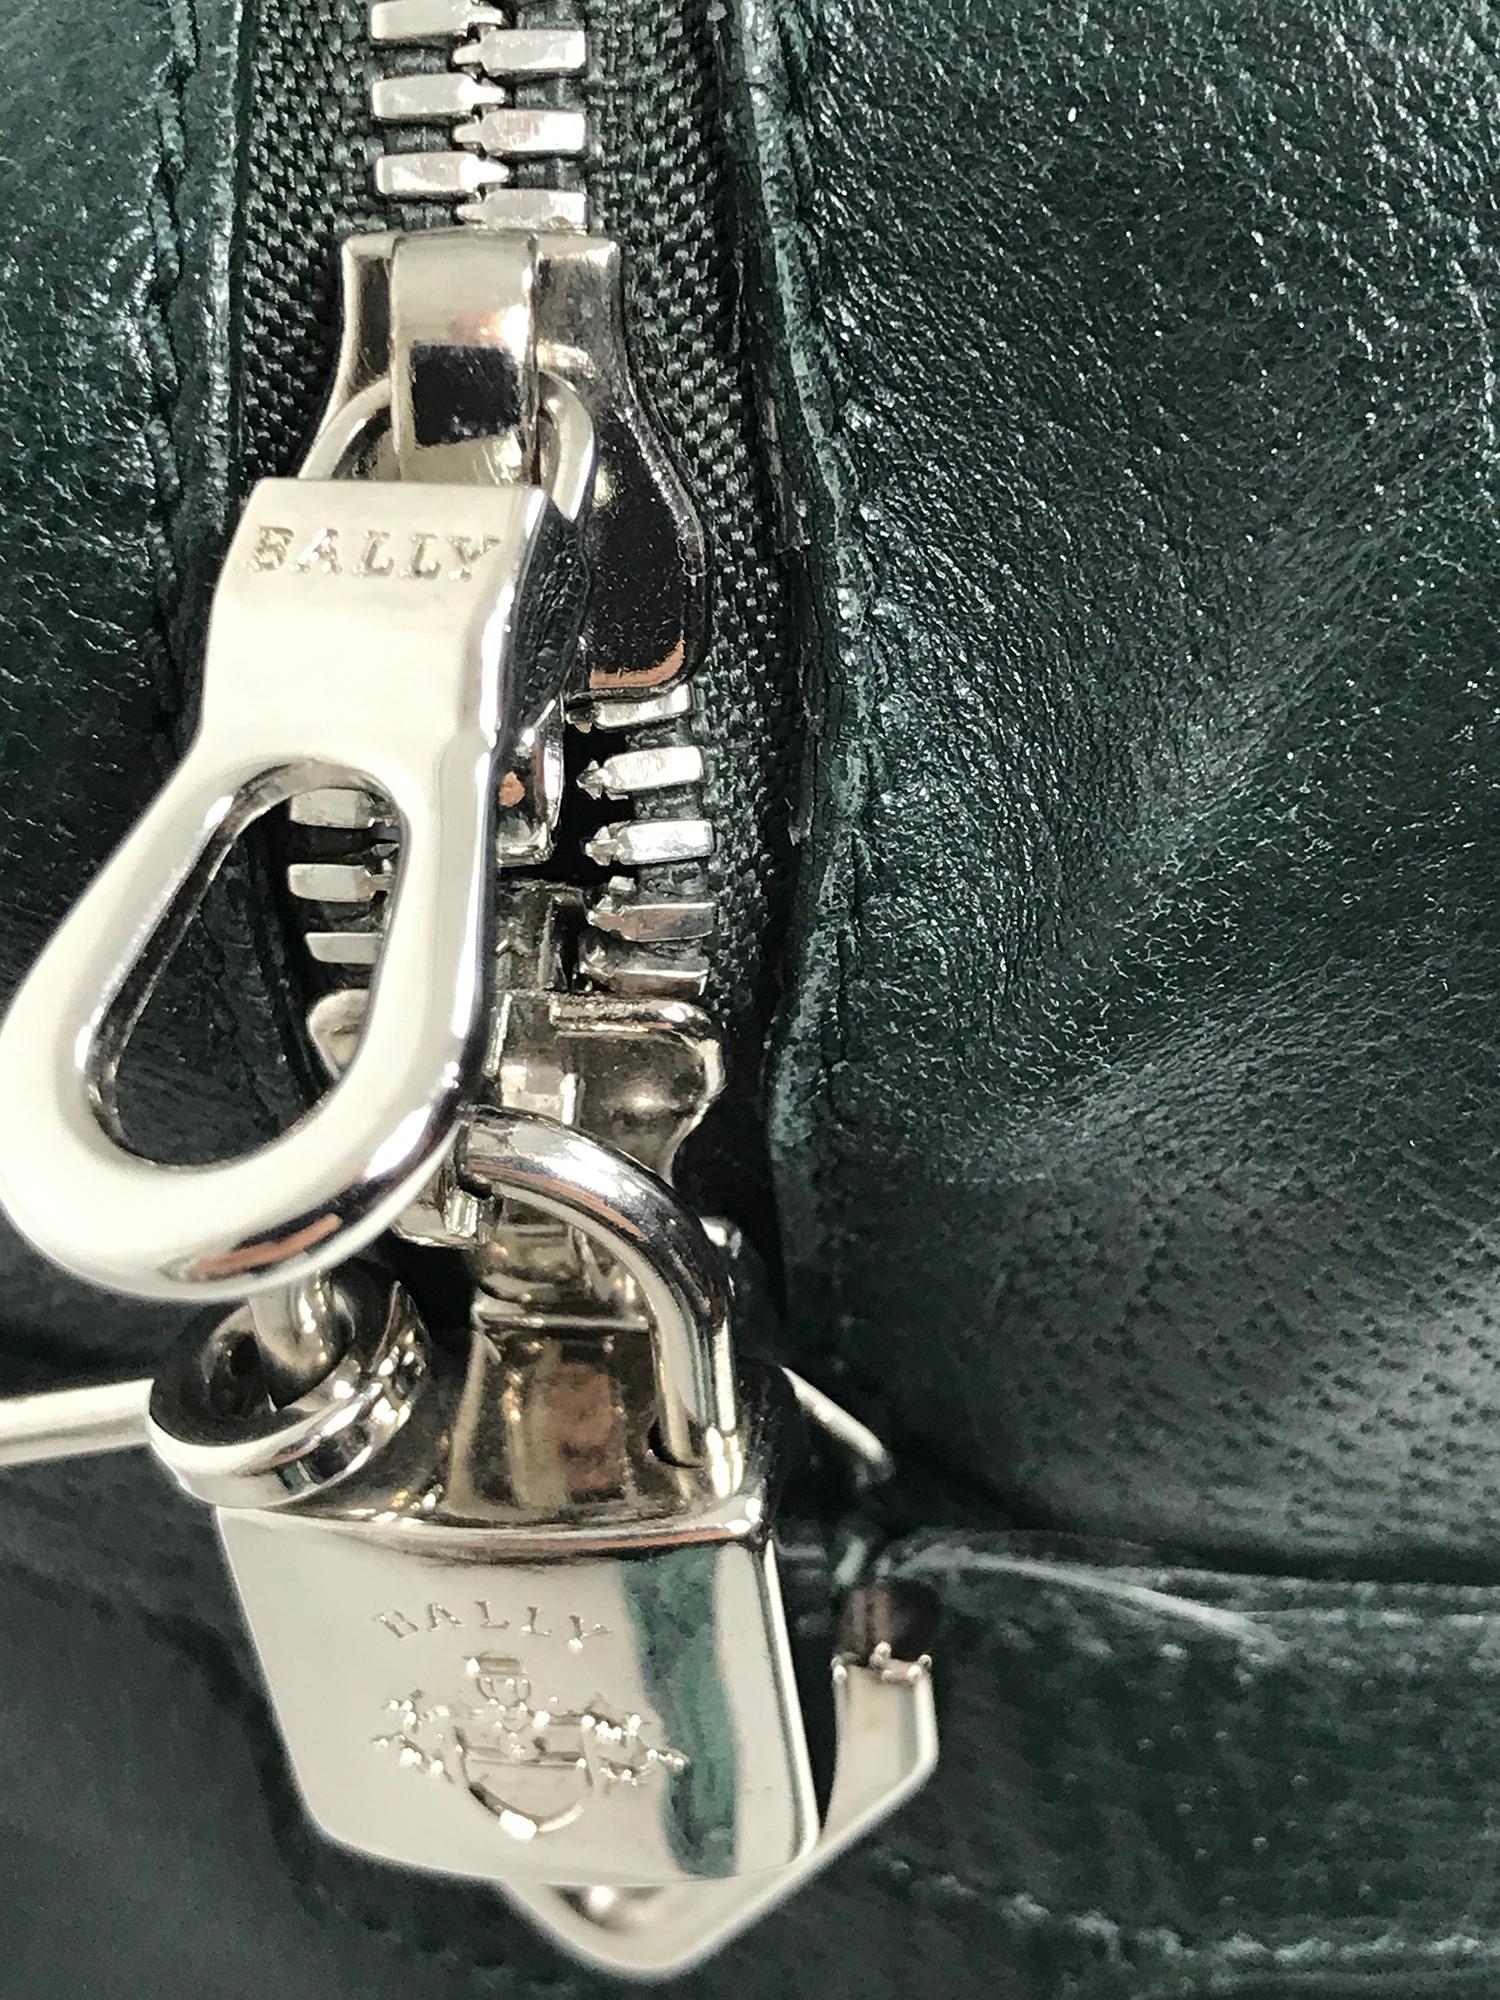 Black Bally Forest Green Pigskin Leather Carry On Business Bag Shoulder Strap